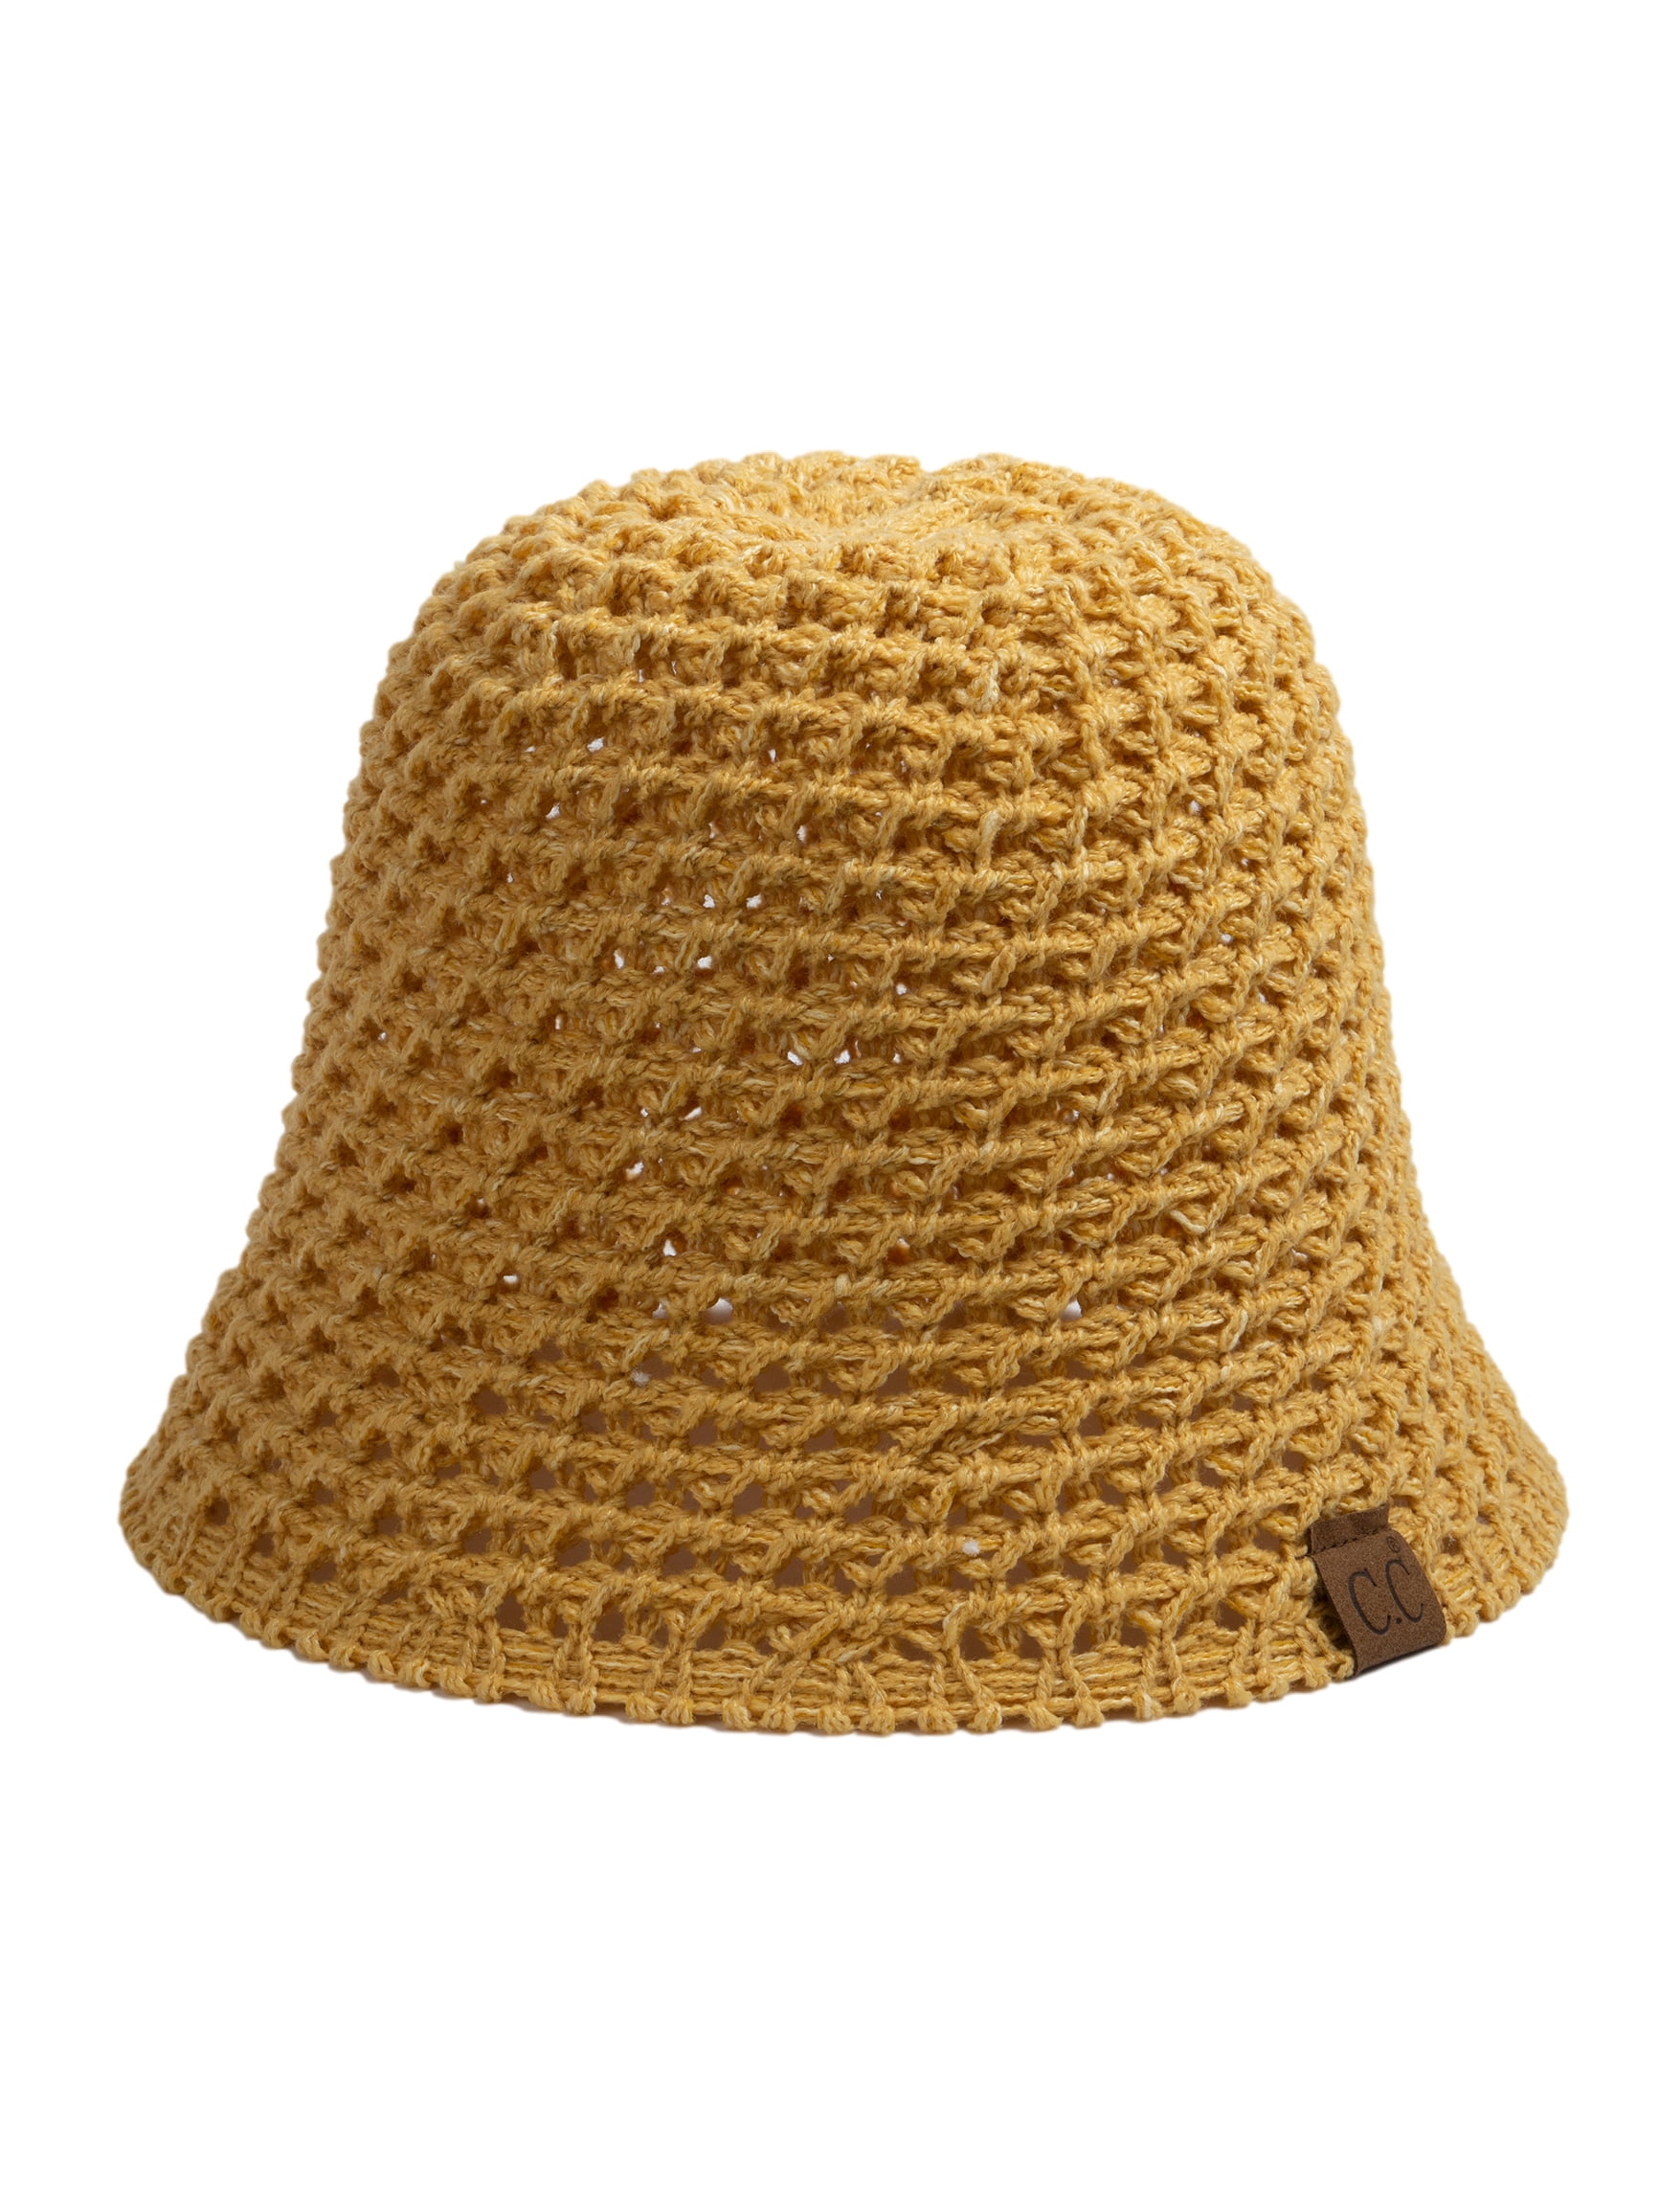 C.C Women's Chunky Open Weave Crochet Cloche Bucket Hat, Lt Denim